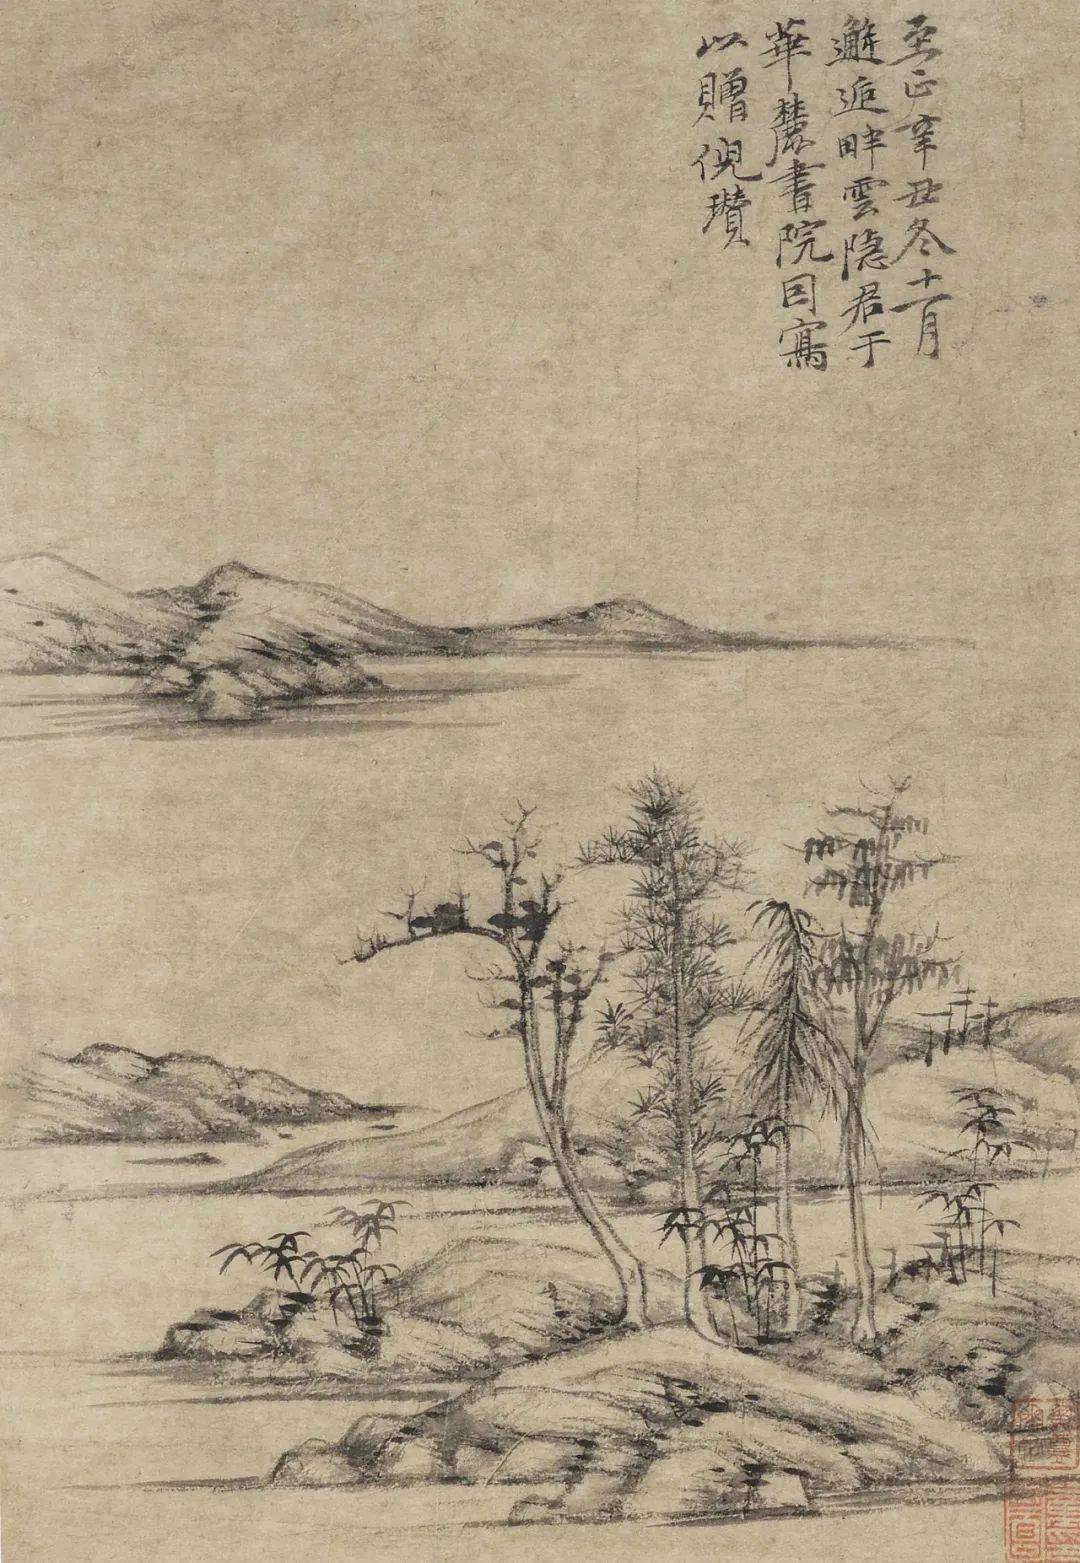 倪瓒的《渔庄秋霁图》正是那样"逸笔草草,不求形似.